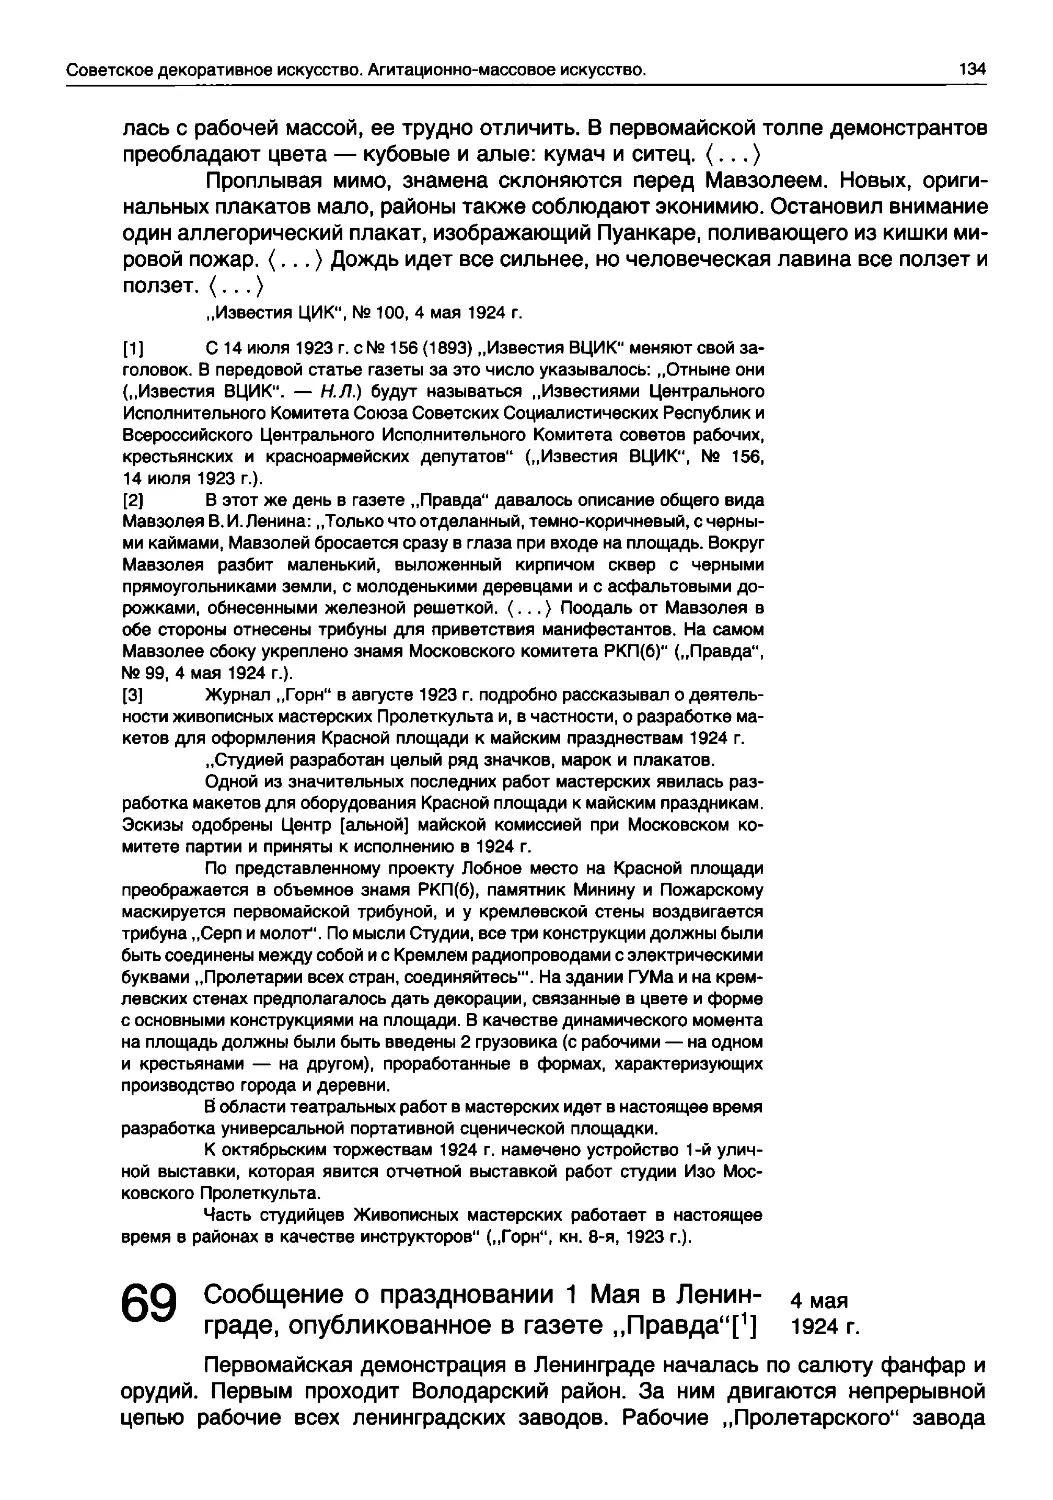 Сообщение о праздновании 1 Мая в Ленин- 4 мая граде, опубликованное в газете „Правда“[1]	1924 г.